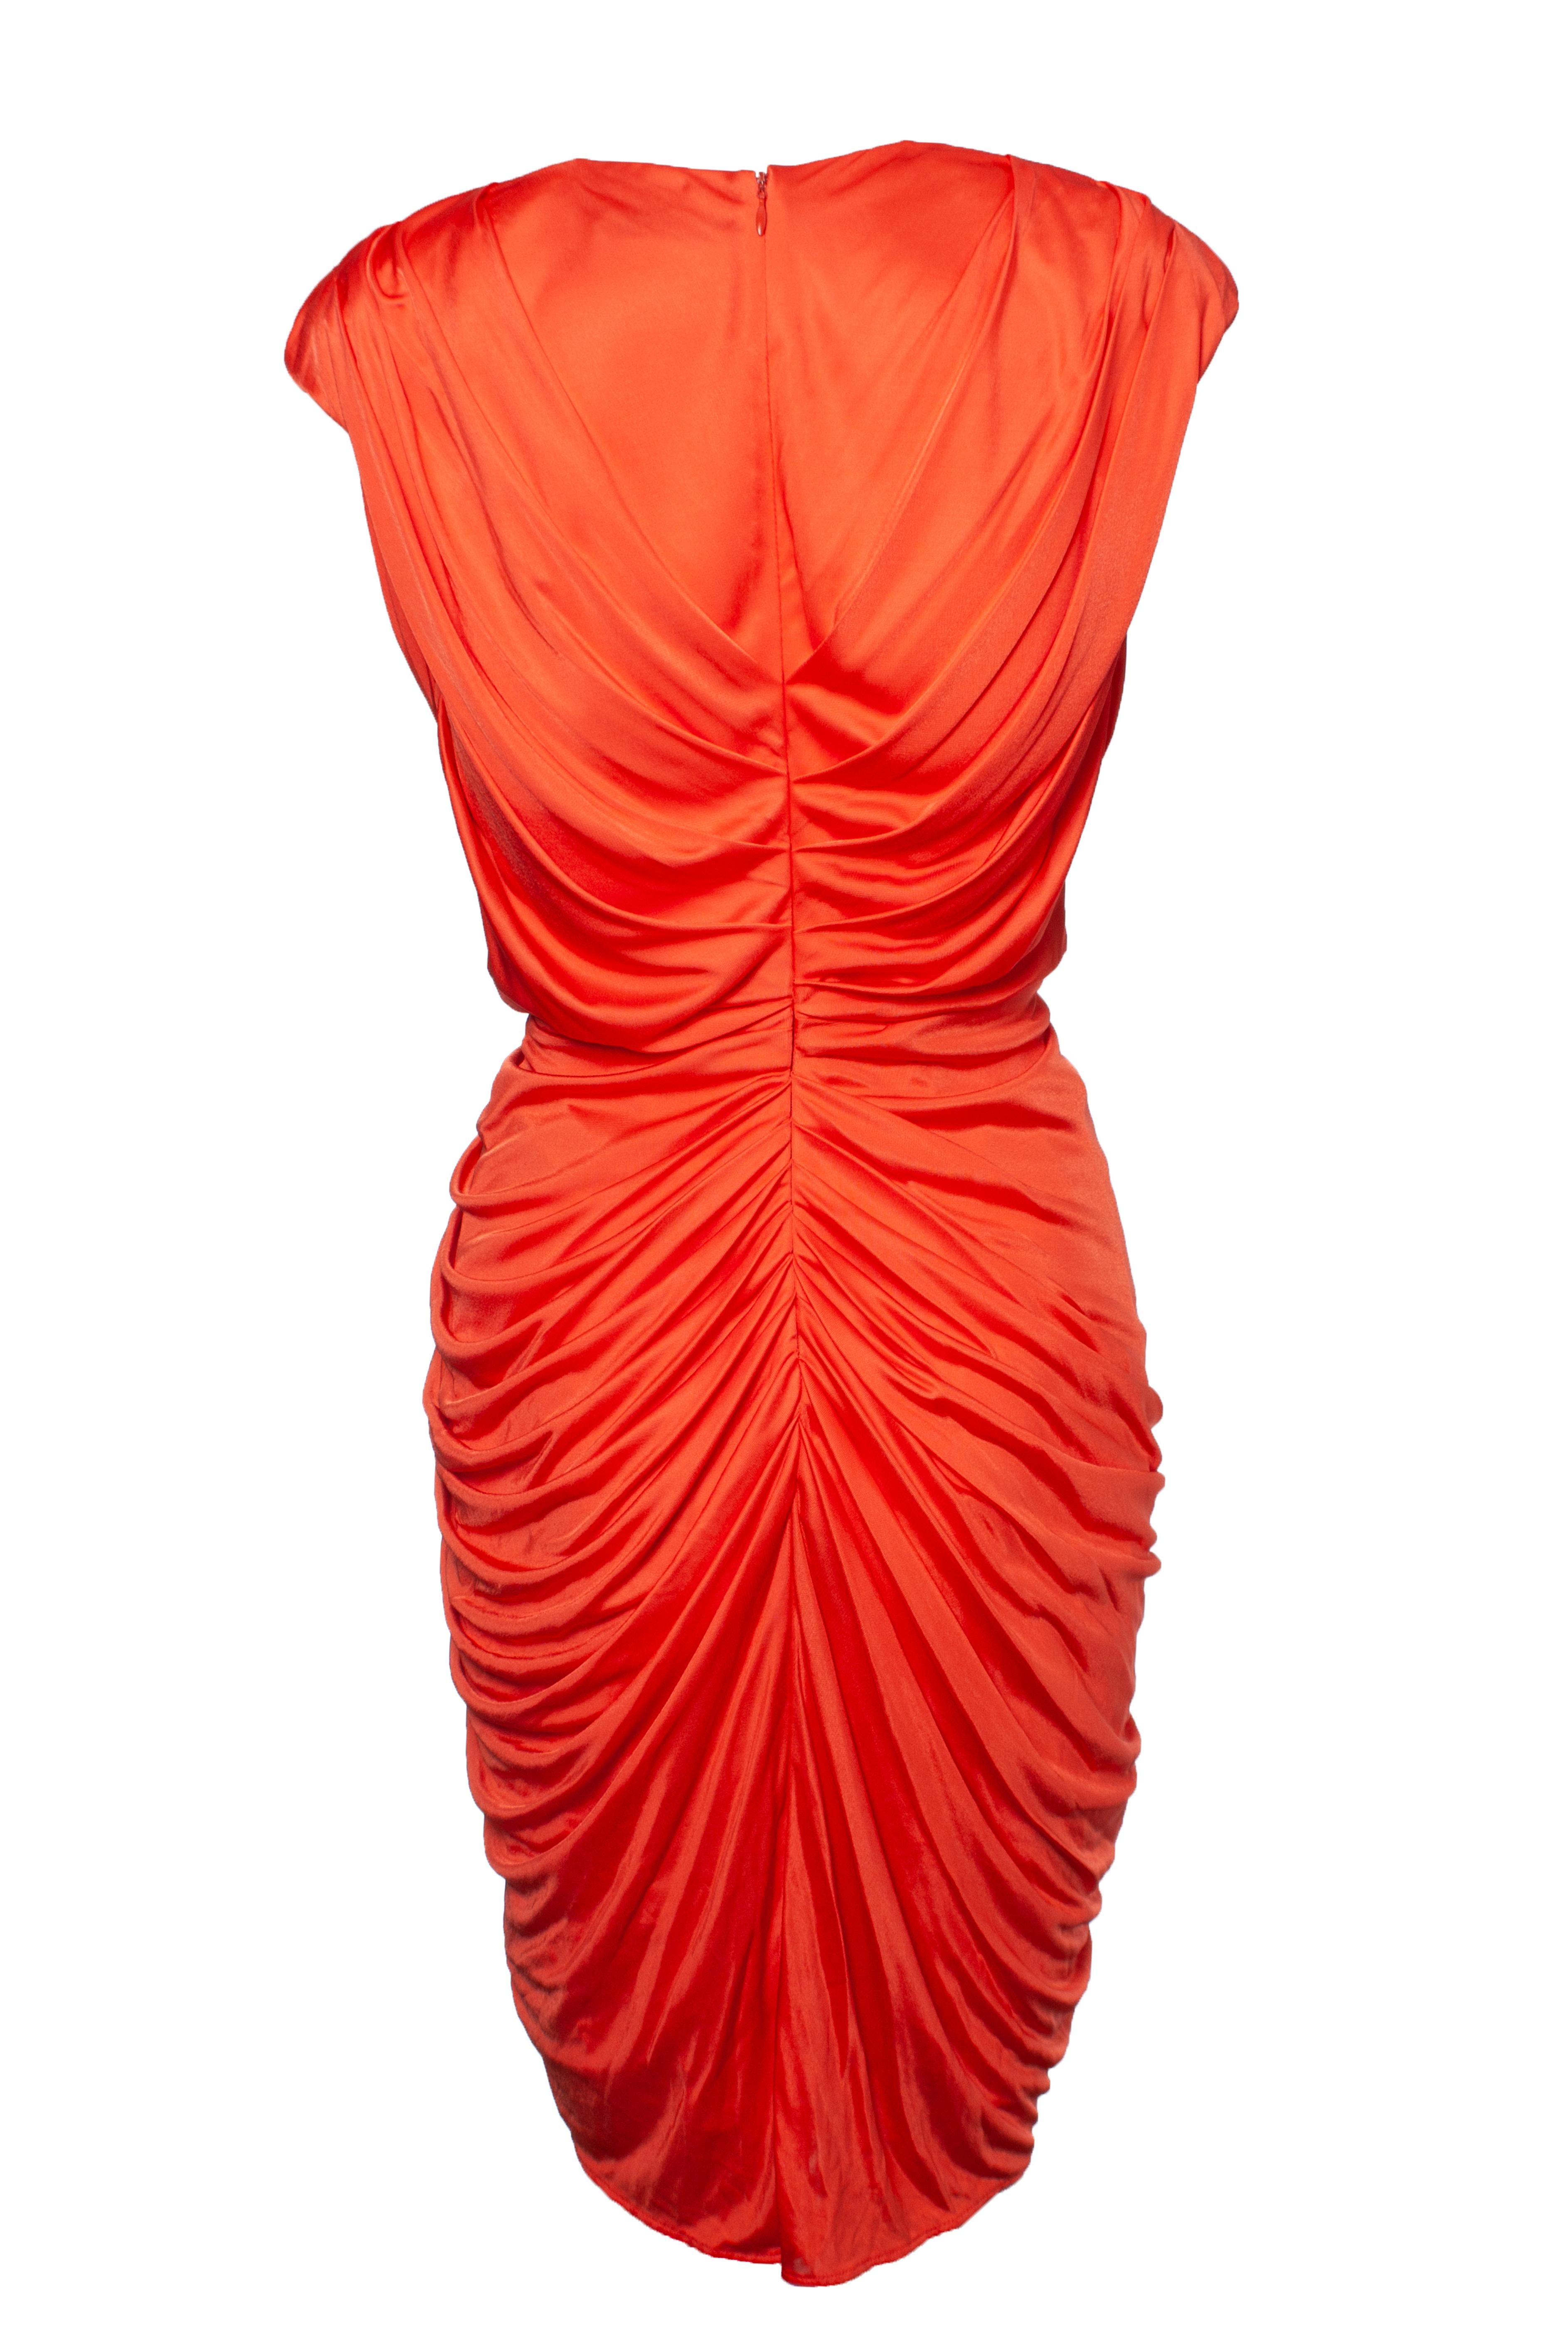 Blumarine, Orangefarbenes, drapiertes Kleid mit Kristall-Verzierungen. Der Artikel ist in sehr gutem Zustand. Das Kleid hat Schulterpolster.

- • CONDIT: sehr guter Zustand 

- • GRÖSSE: IT44 - M 

- • MASSNAHMEN: Länge 97 cm, Breite 41 cm, Taille